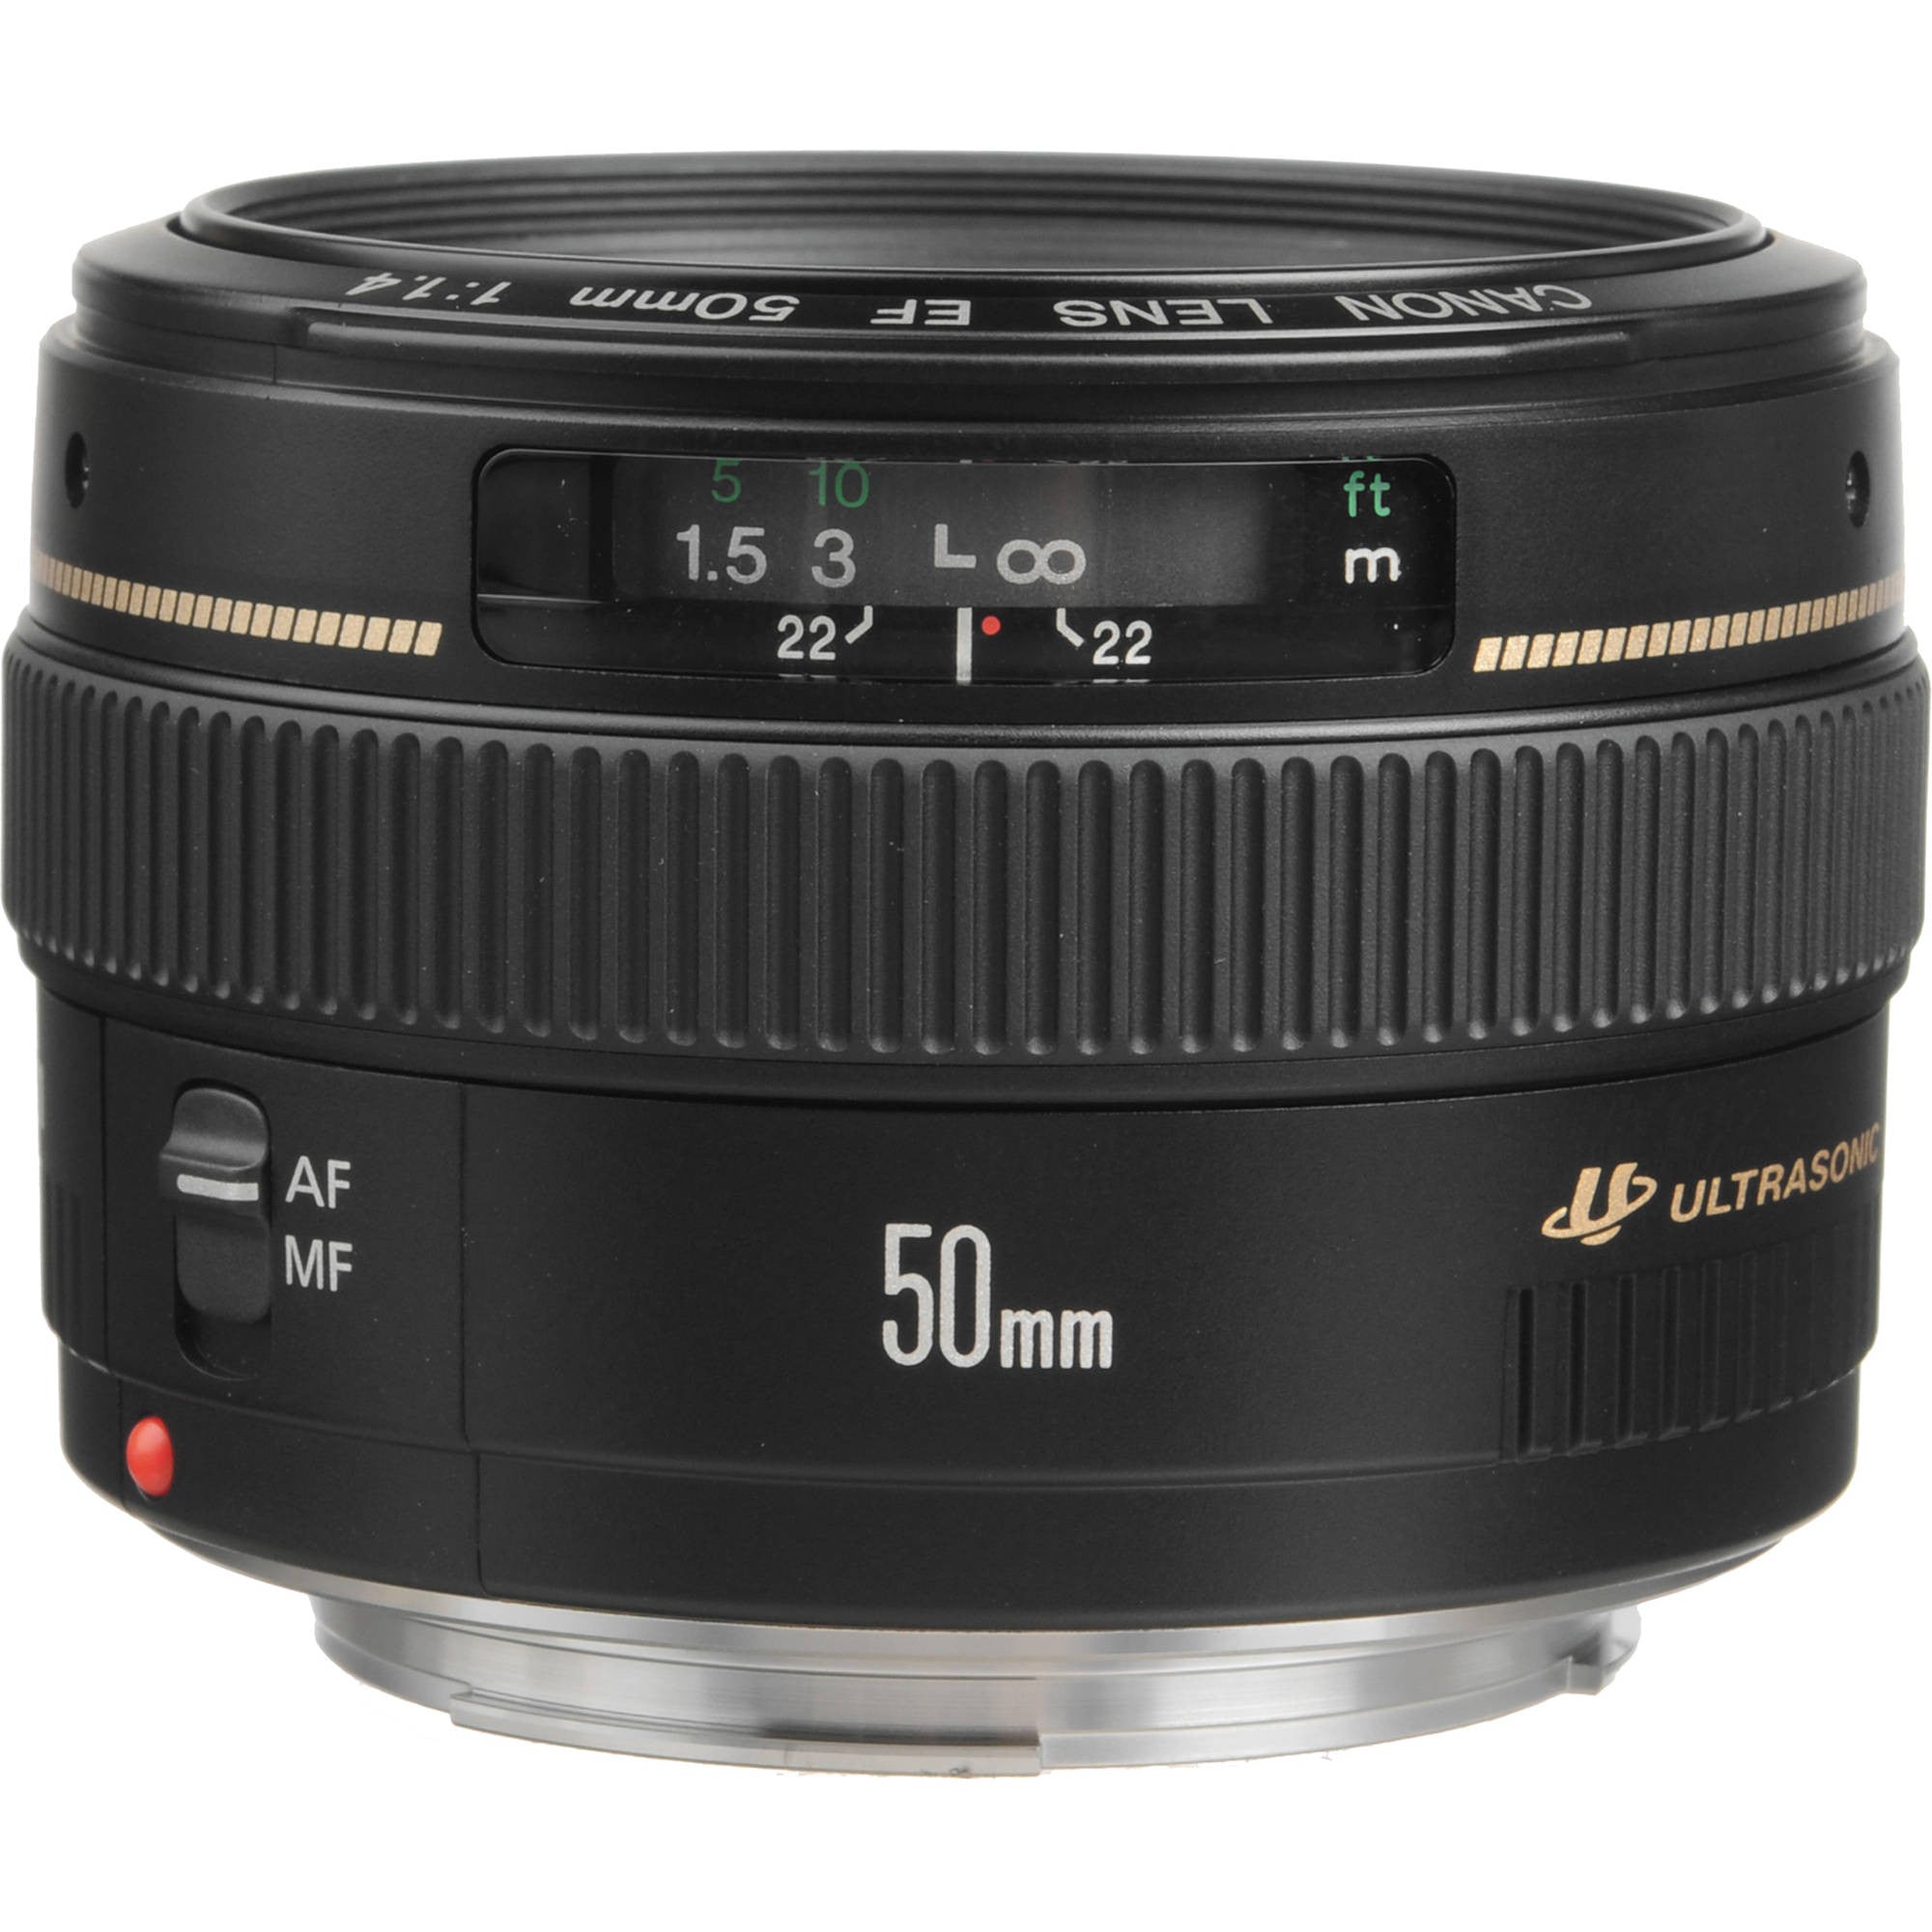 Canon EF 50mm f1.4 USM Lens, lenses slr lenses, Canon - Pictureline  - 1